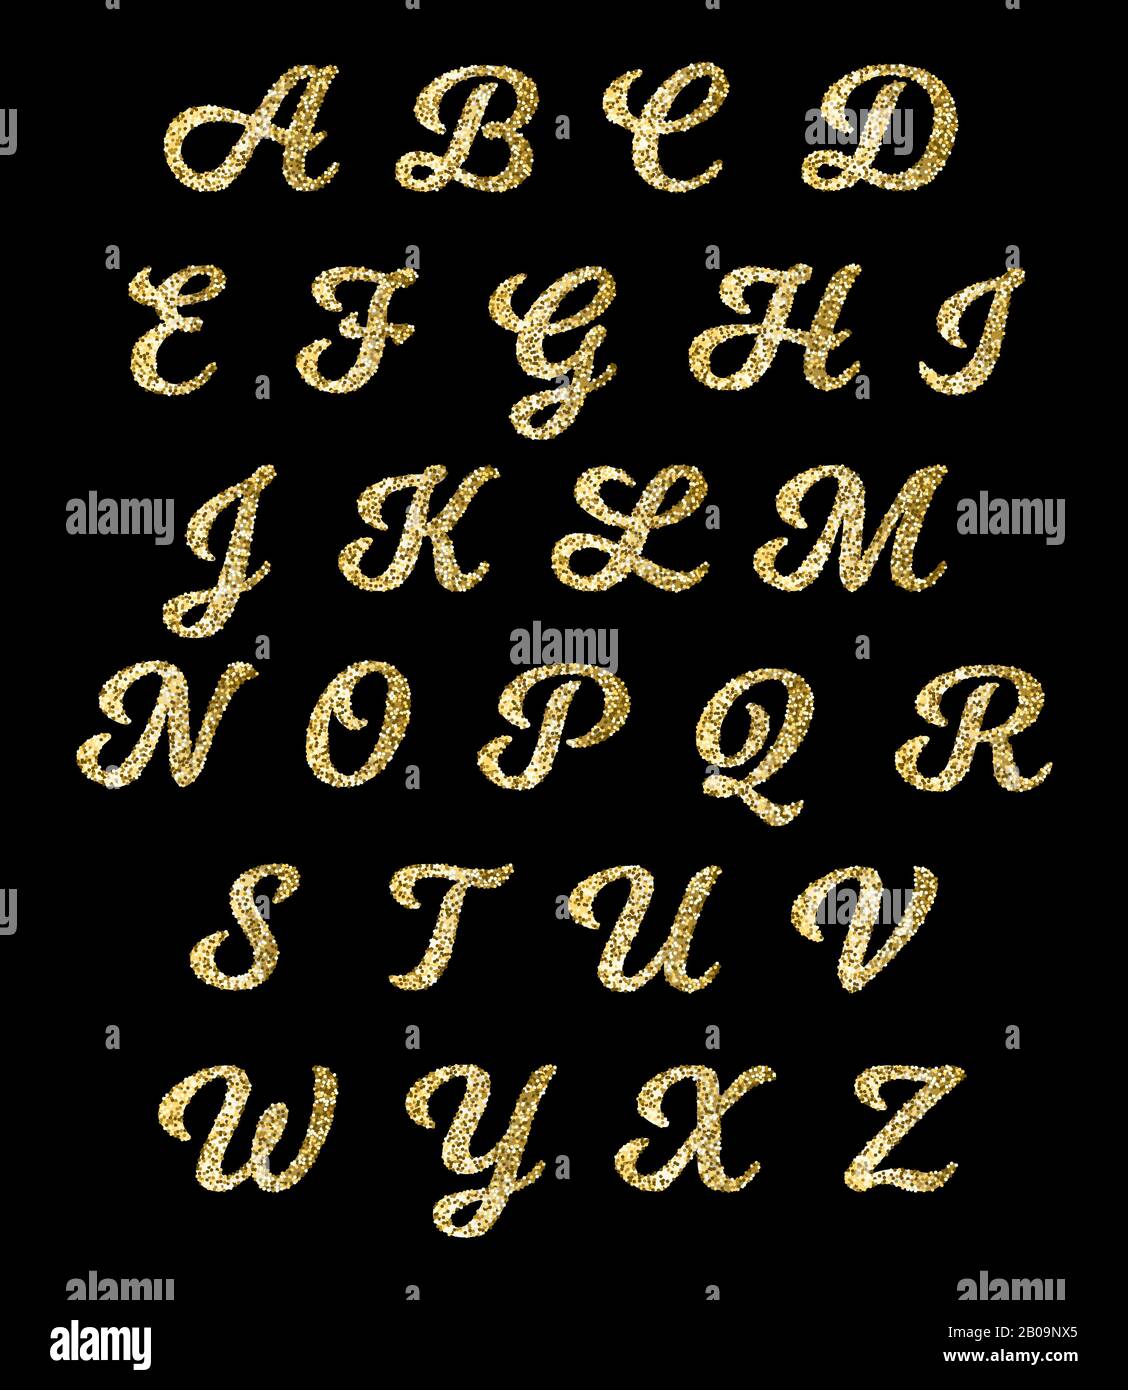 Goldenes Glitzeralphabet, Goldschrift Vektorbuchstaben mit Glitzereffekt. Modeglitzeralphabet, Abbildung des glitzernden goldenen Alphabets Stock Vektor